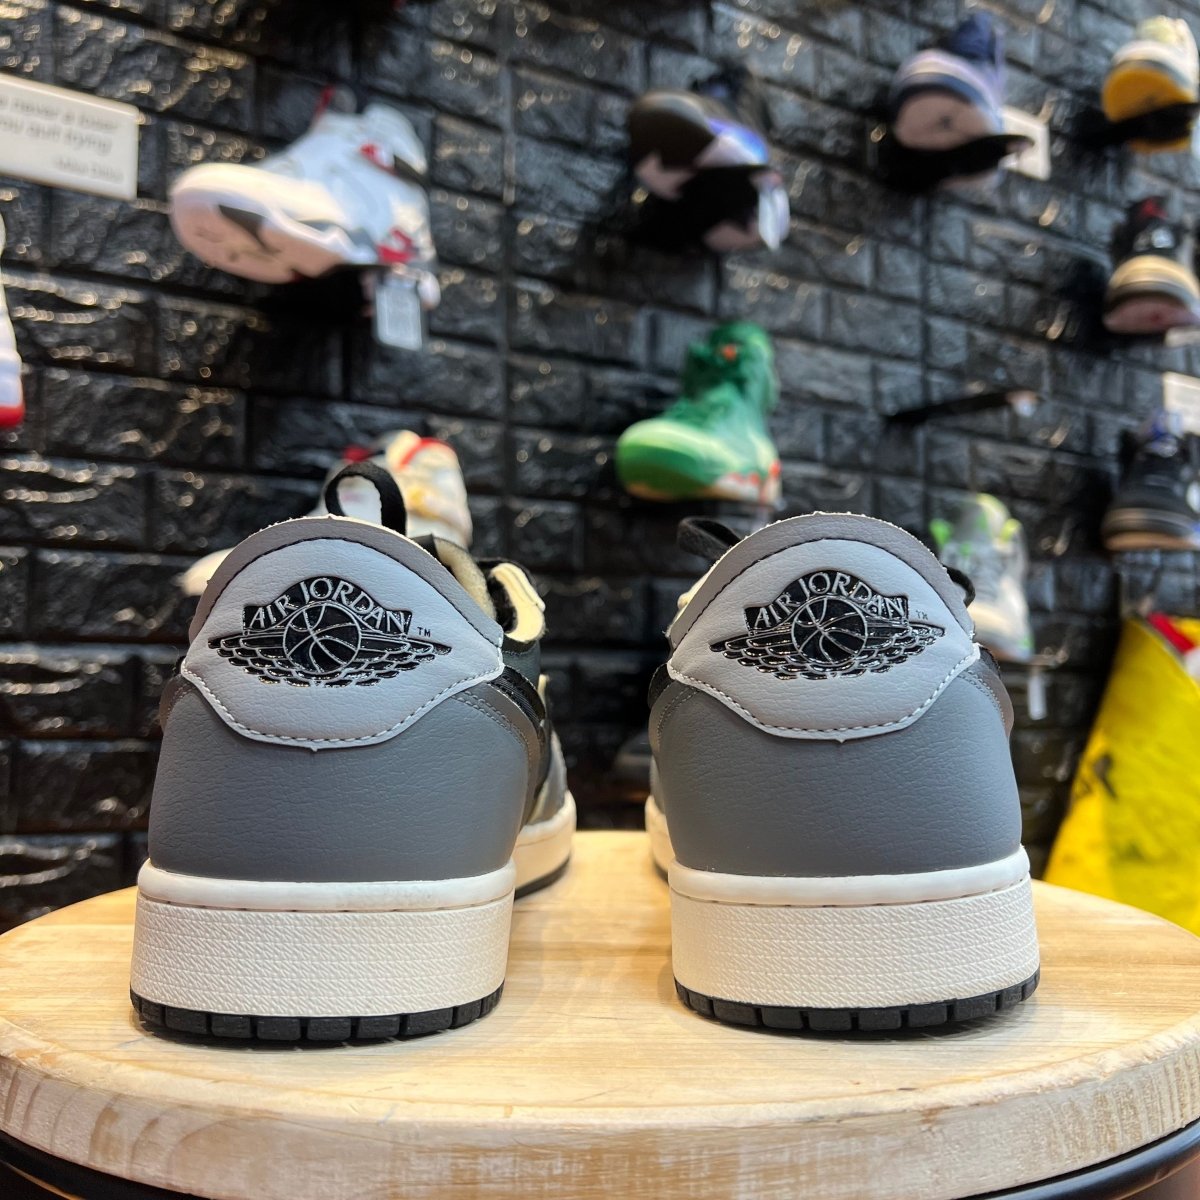 Air Jordan 1 Retro Low OG EX 'Dark Smoke Grey' - Gently Enjoyed (Used) Men 13 - Low Sneaker - Jawns on Fire Sneakers & Streetwear